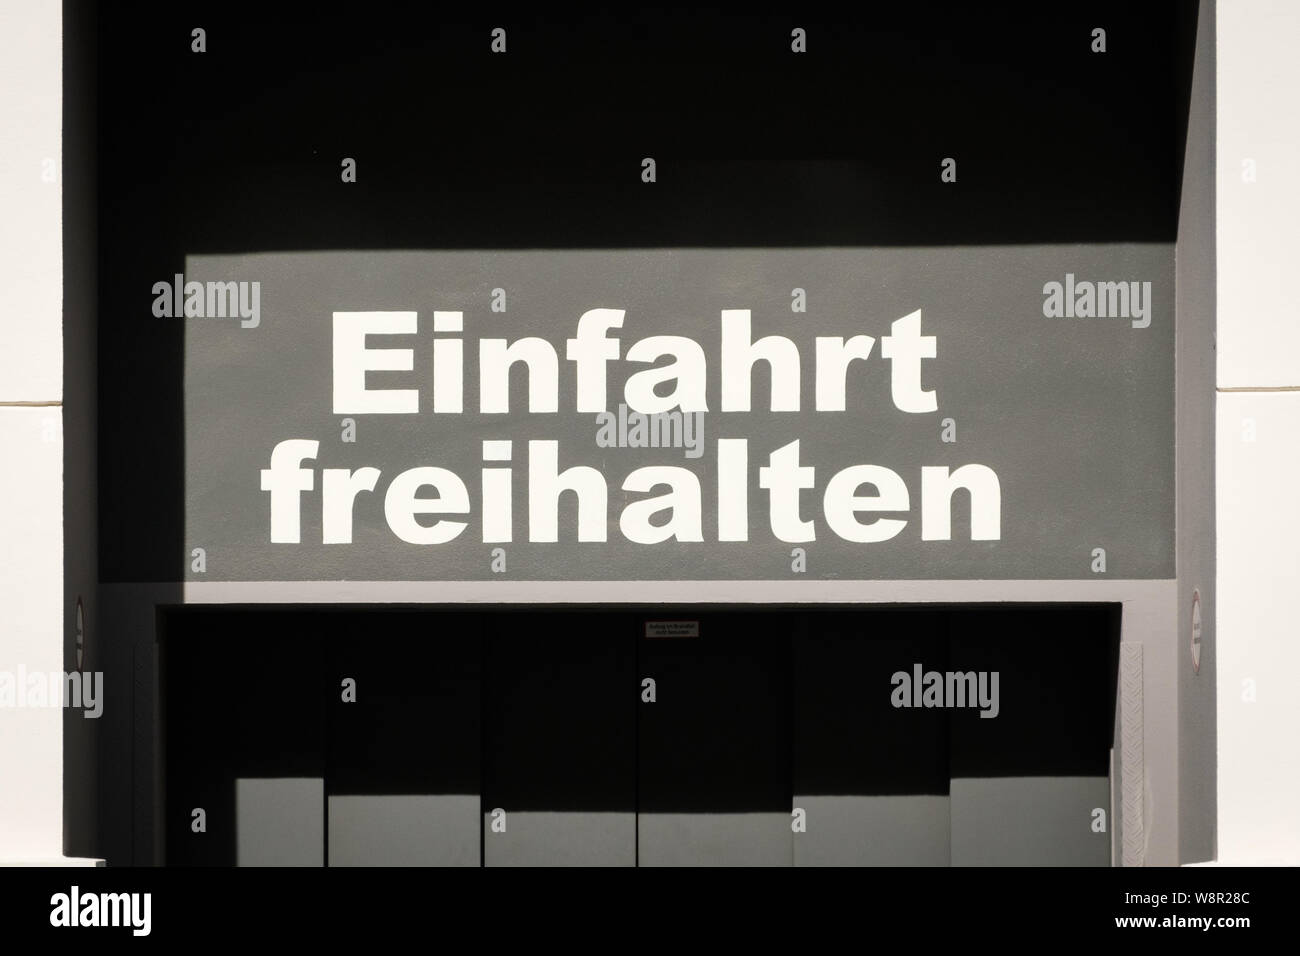 Einfahrt freihalten (allemand pour : Tenir à l'entrée clear) Banque D'Images